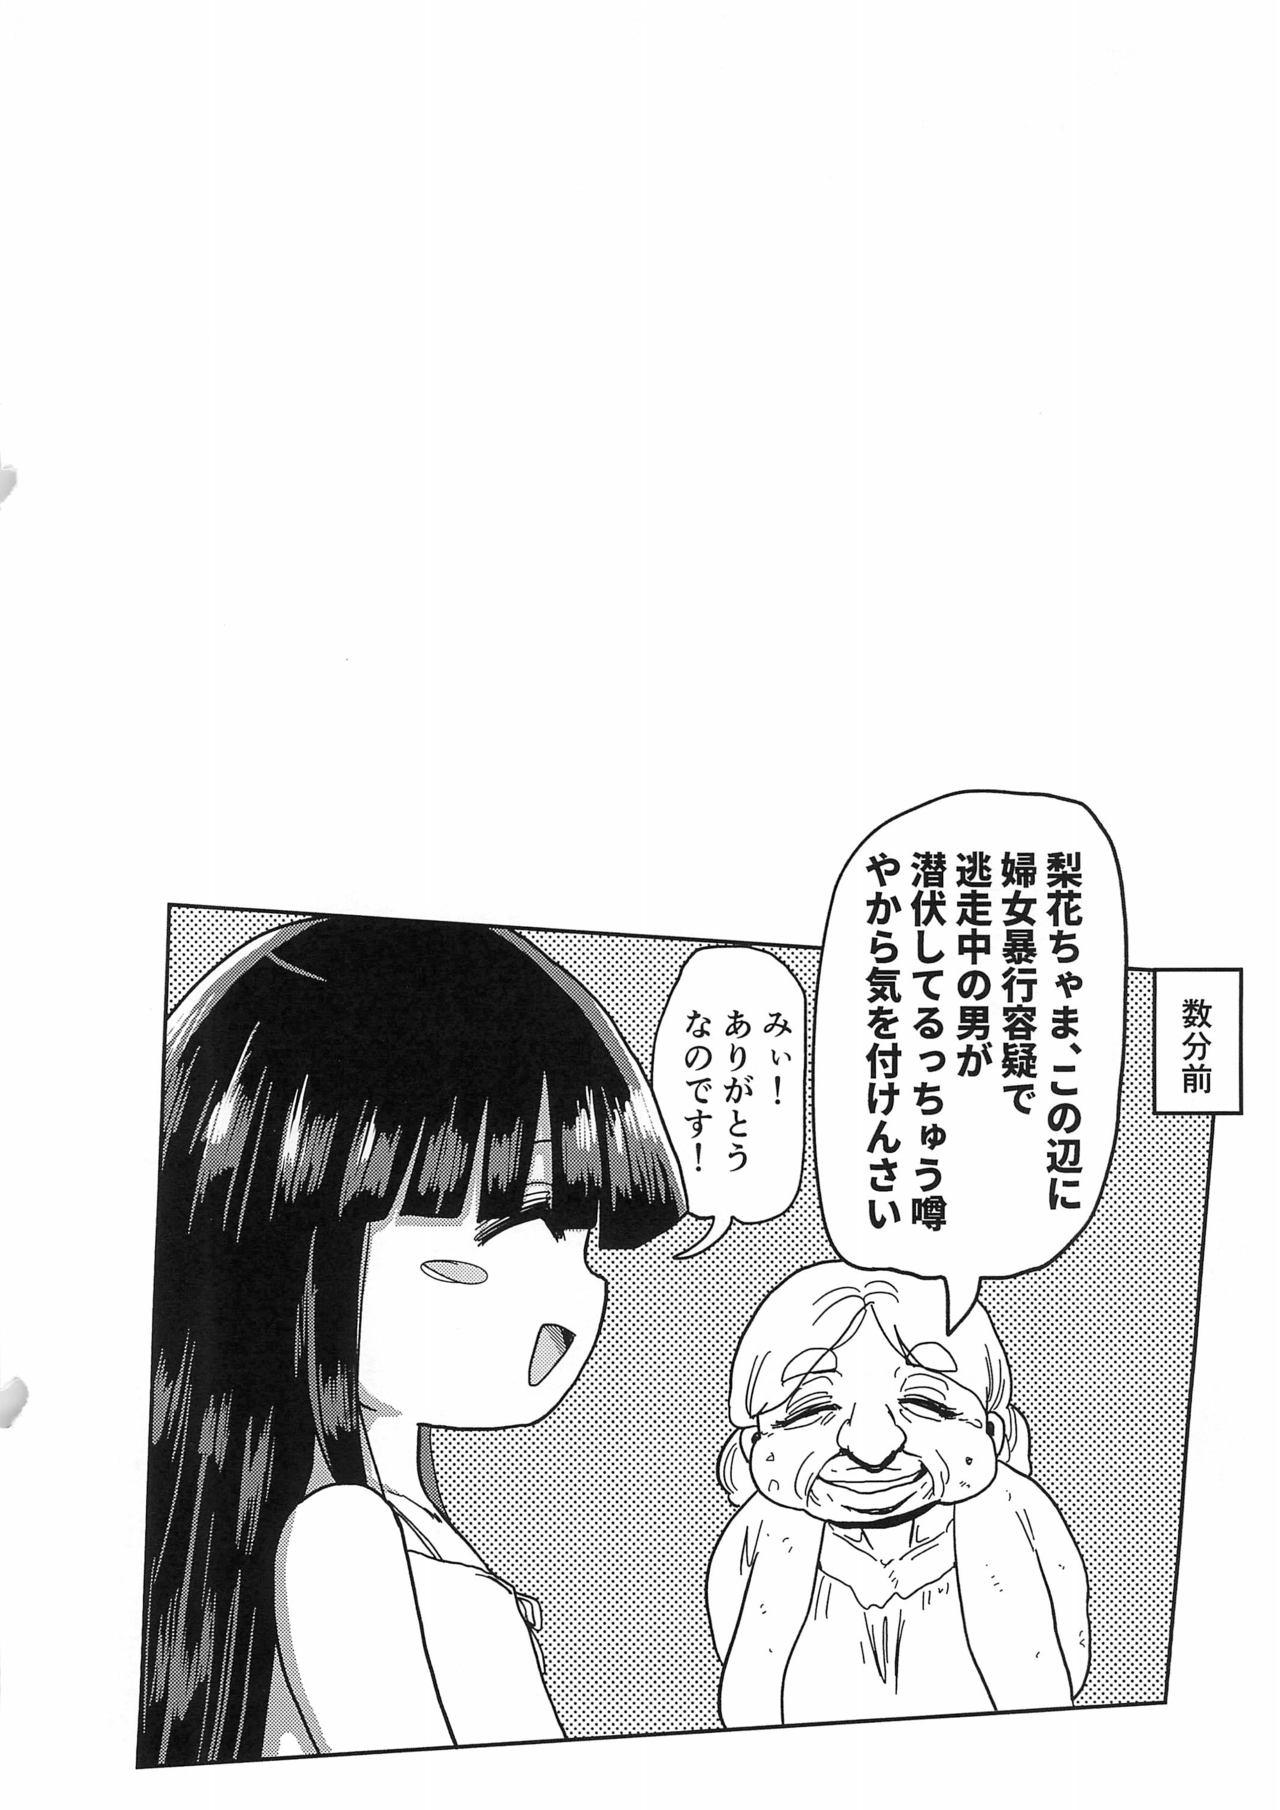 Babysitter Kaijou Genteibon Higurashi In Okashi Hen - Higurashi no naku koro ni Ink - Page 2